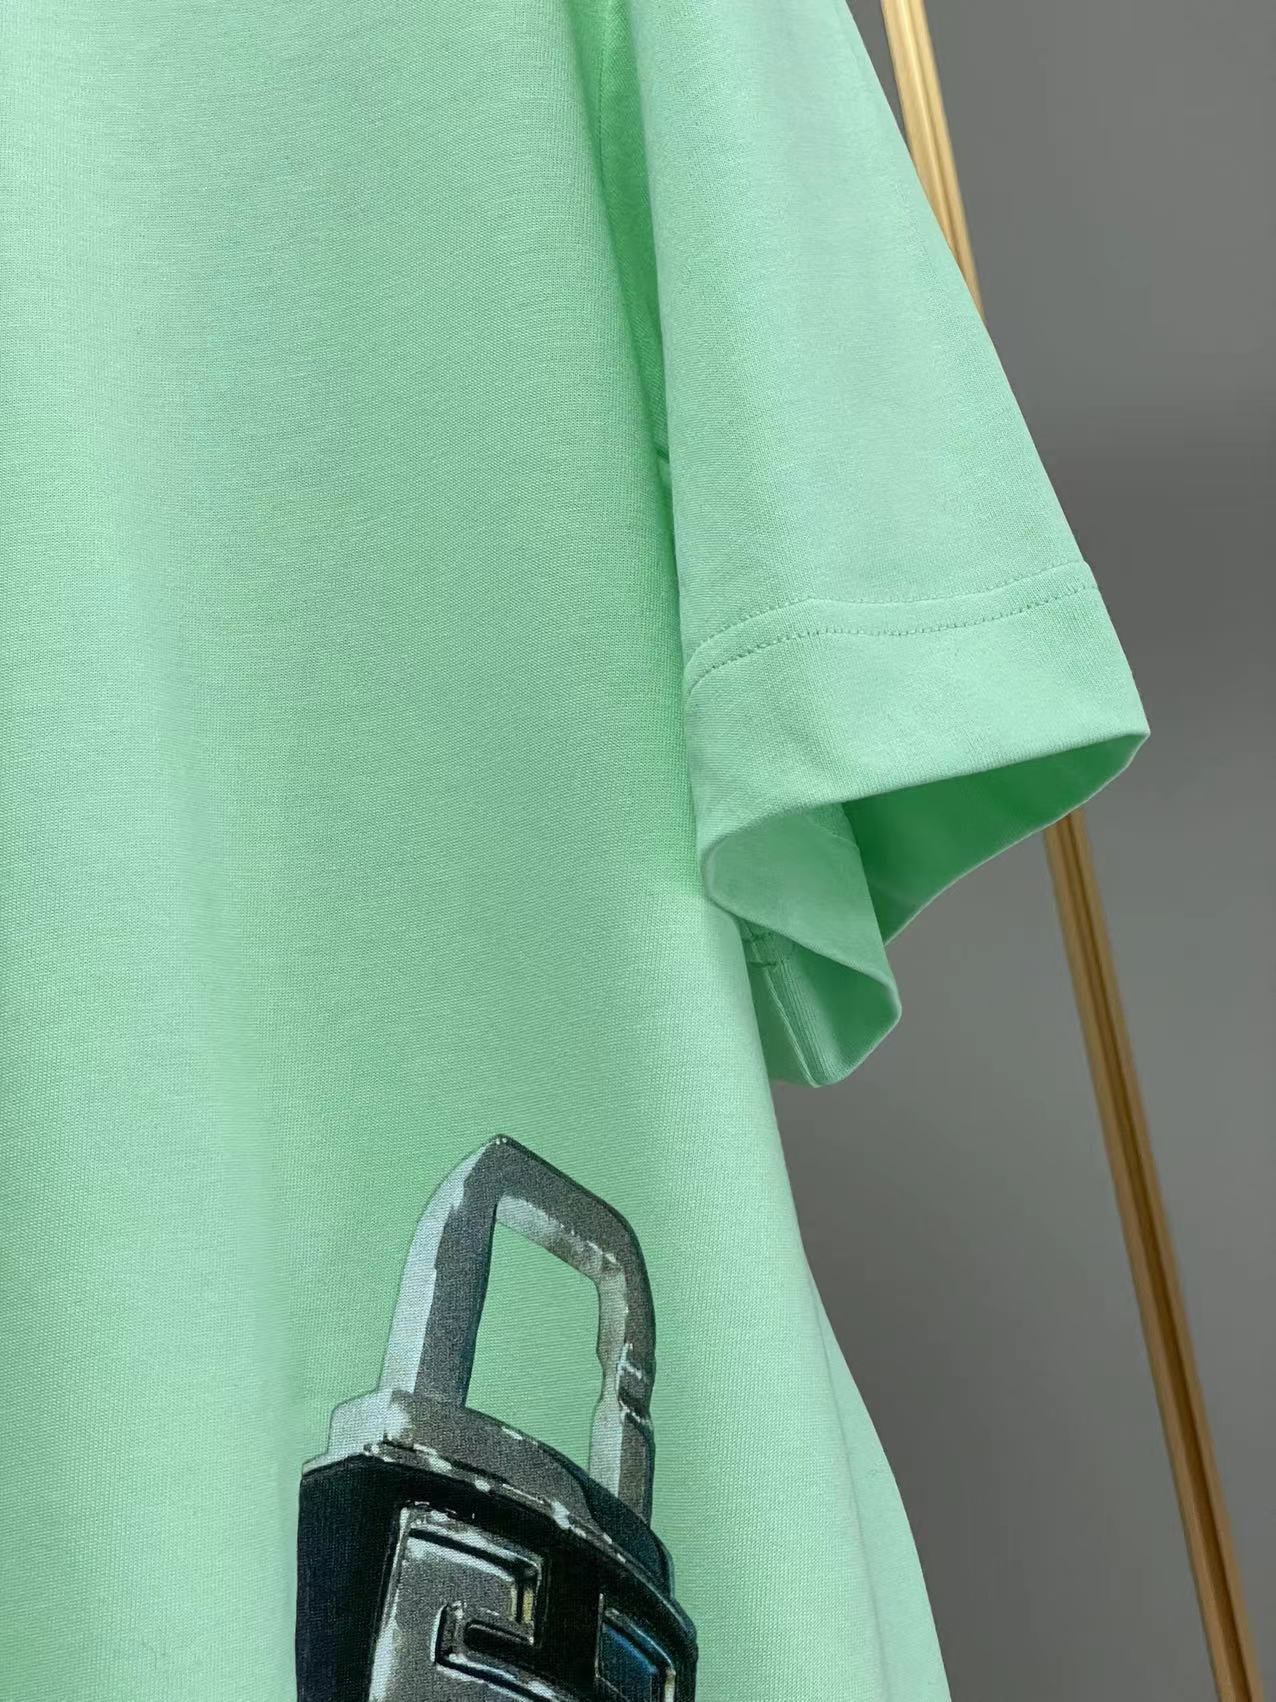 ジバンシィtシャツ激安通販 純綿 短袖 トップス ファッション ロックプリント 柔らかい 大販売 2色可選 グリーン_4